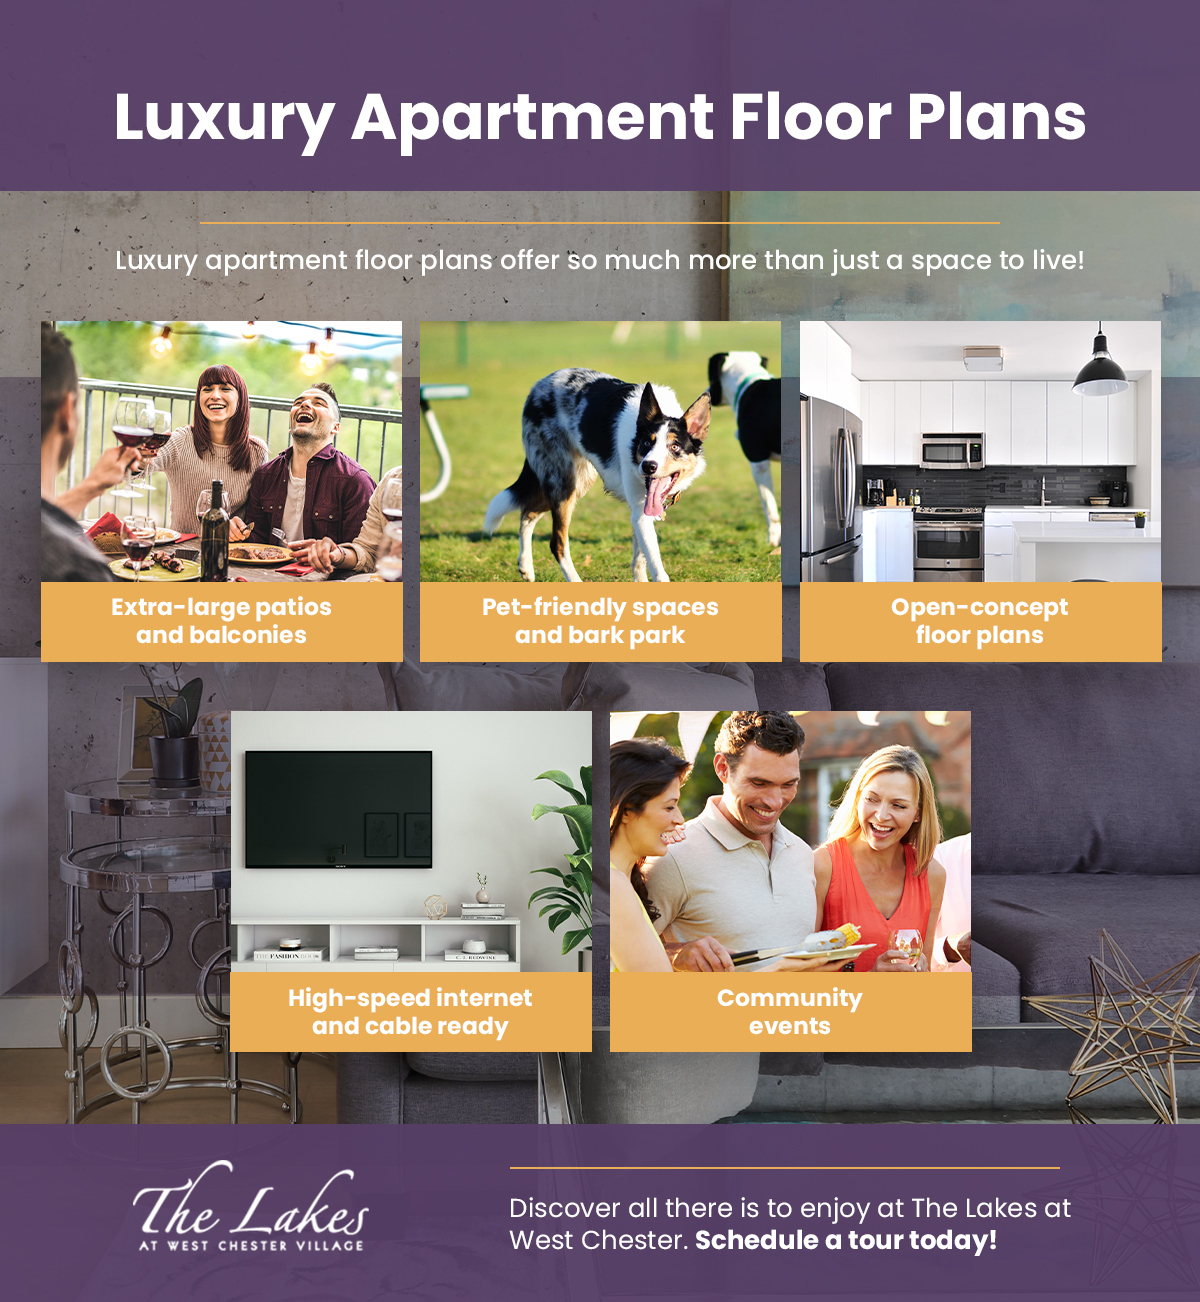 Luxury-Apartment-Floor-Plans-InfographicLuxury-Apartment-Floor-Plans-5f735566d6aea